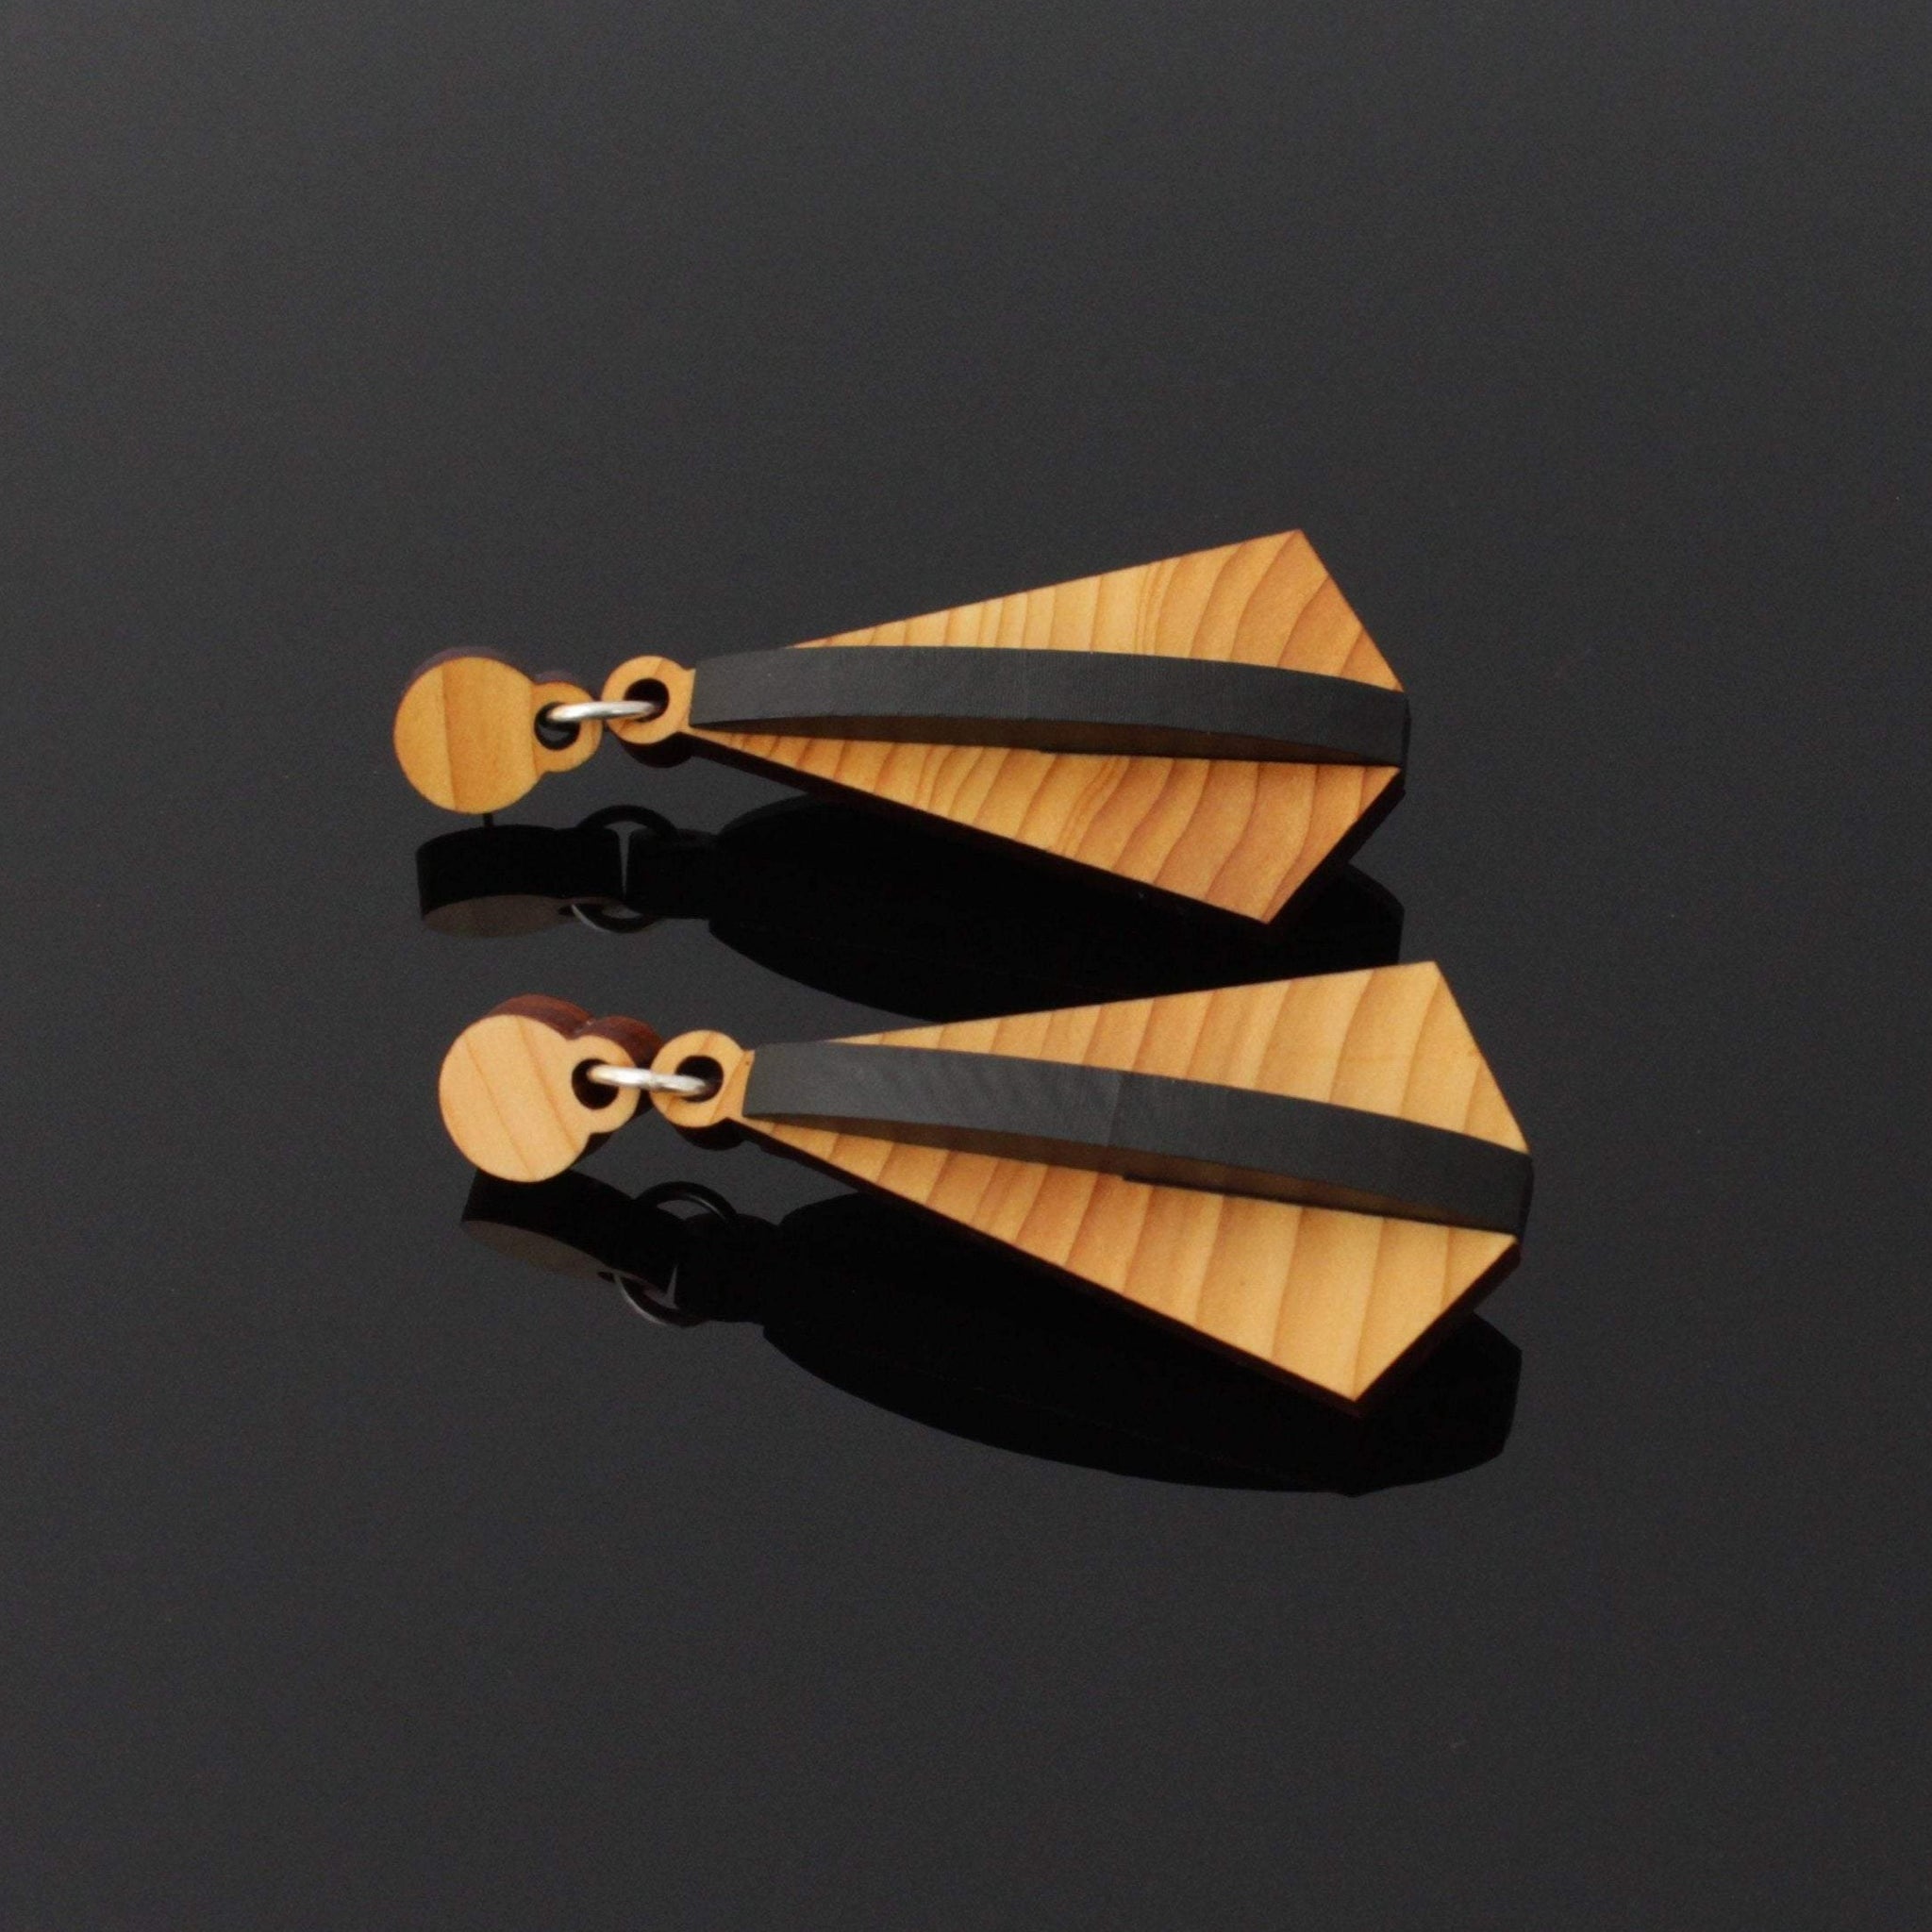 Wras - Irish Jewellery - Geometric wooden pendant earrings - Handmade by Rowena Sheen 